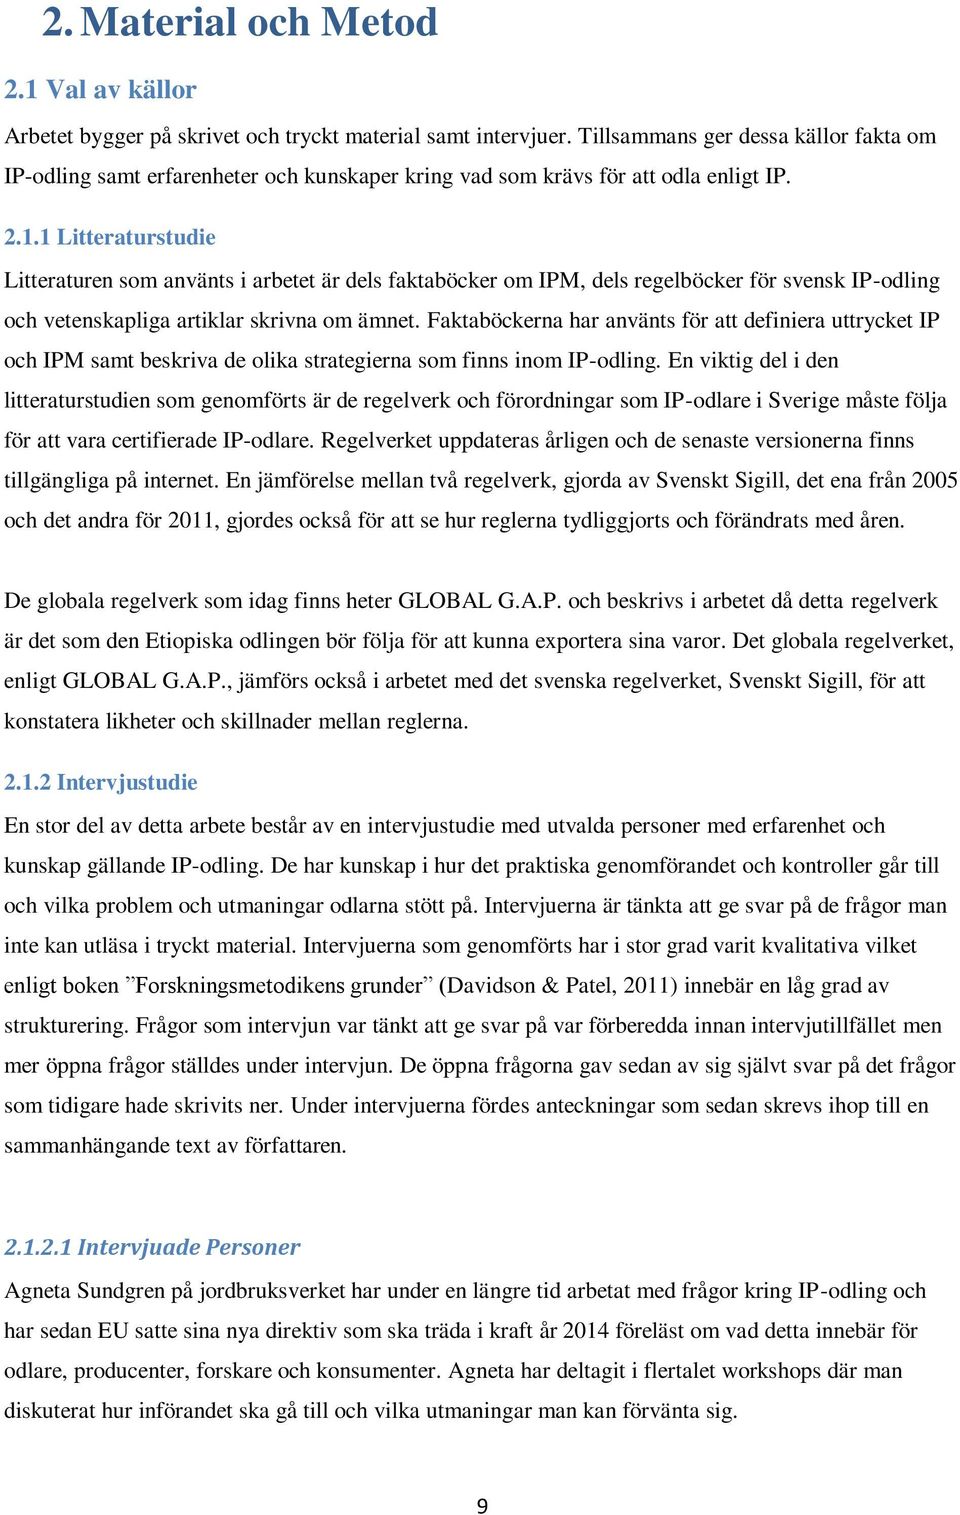 1 Litteraturstudie Litteraturen som använts i arbetet är dels faktaböcker om IPM, dels regelböcker för svensk IP-odling och vetenskapliga artiklar skrivna om ämnet.